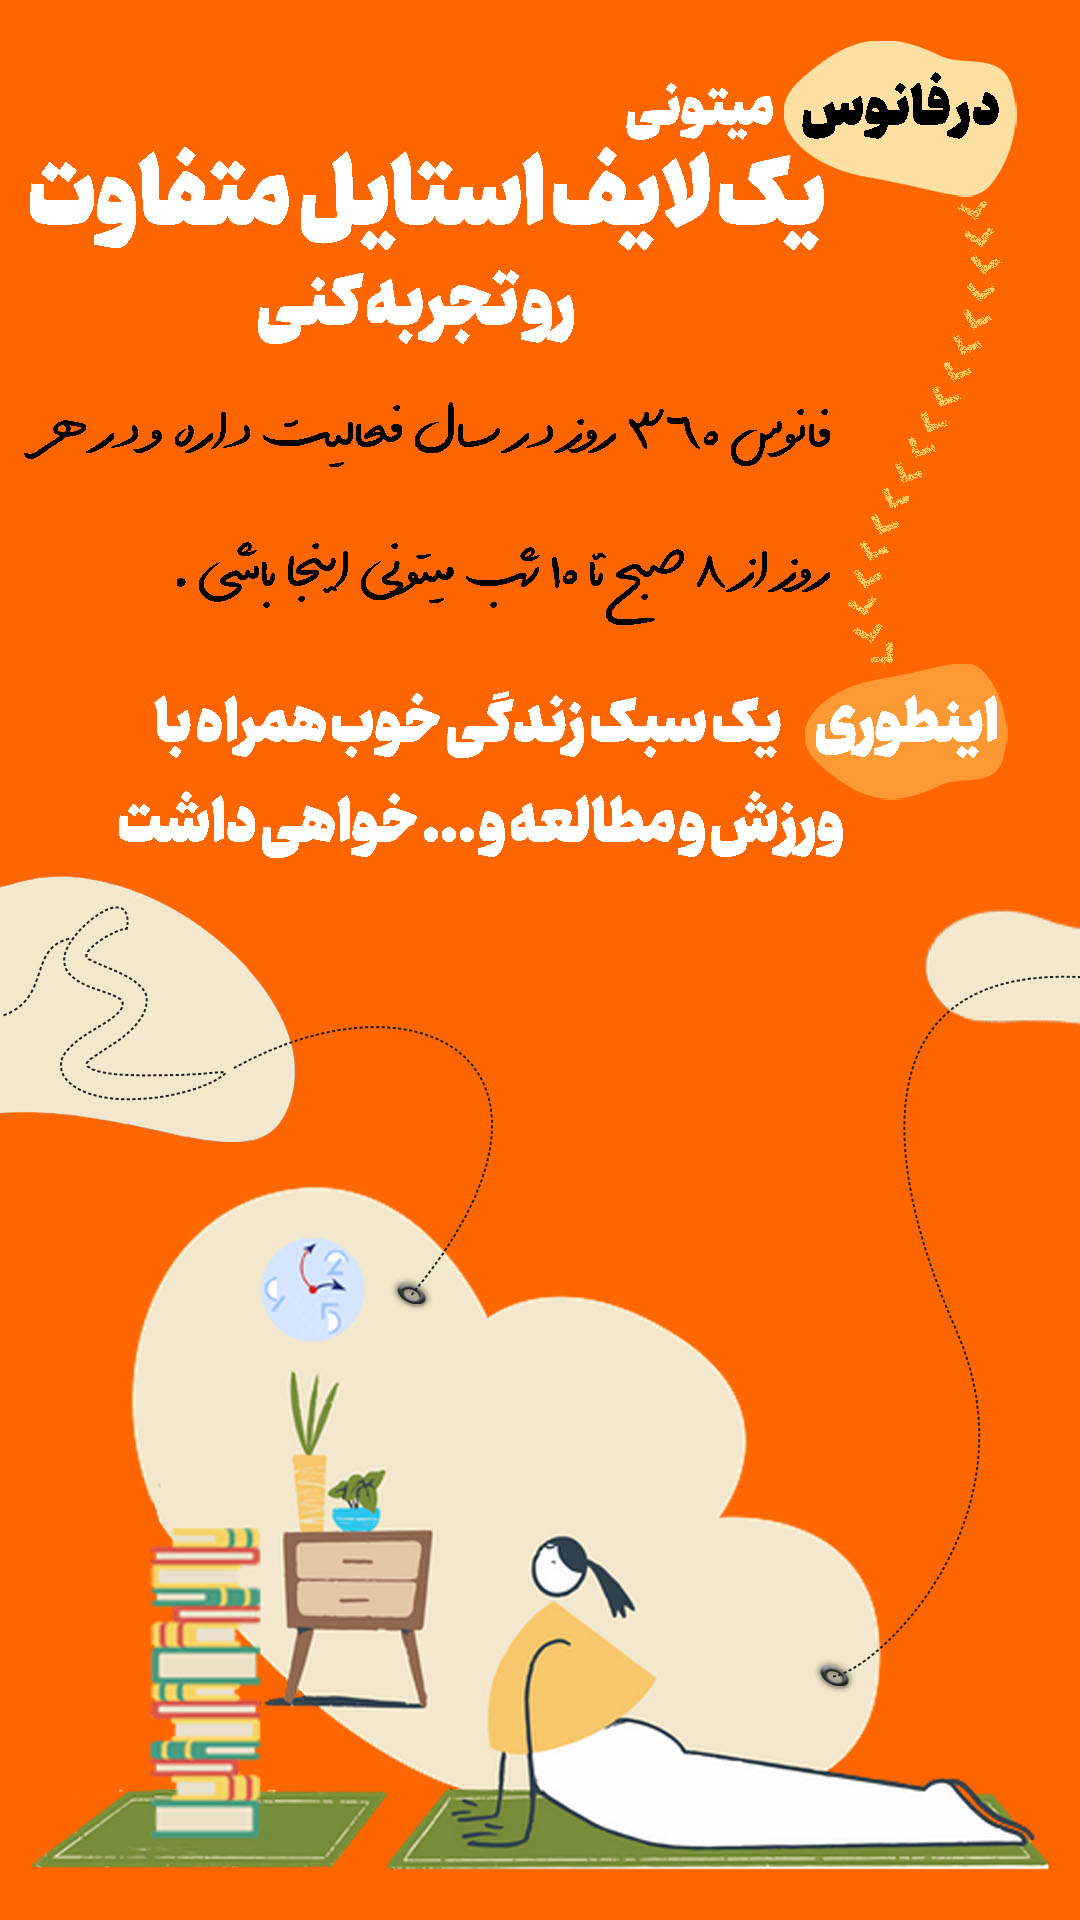 معرفی کمپ مطالعاتی شیراز4